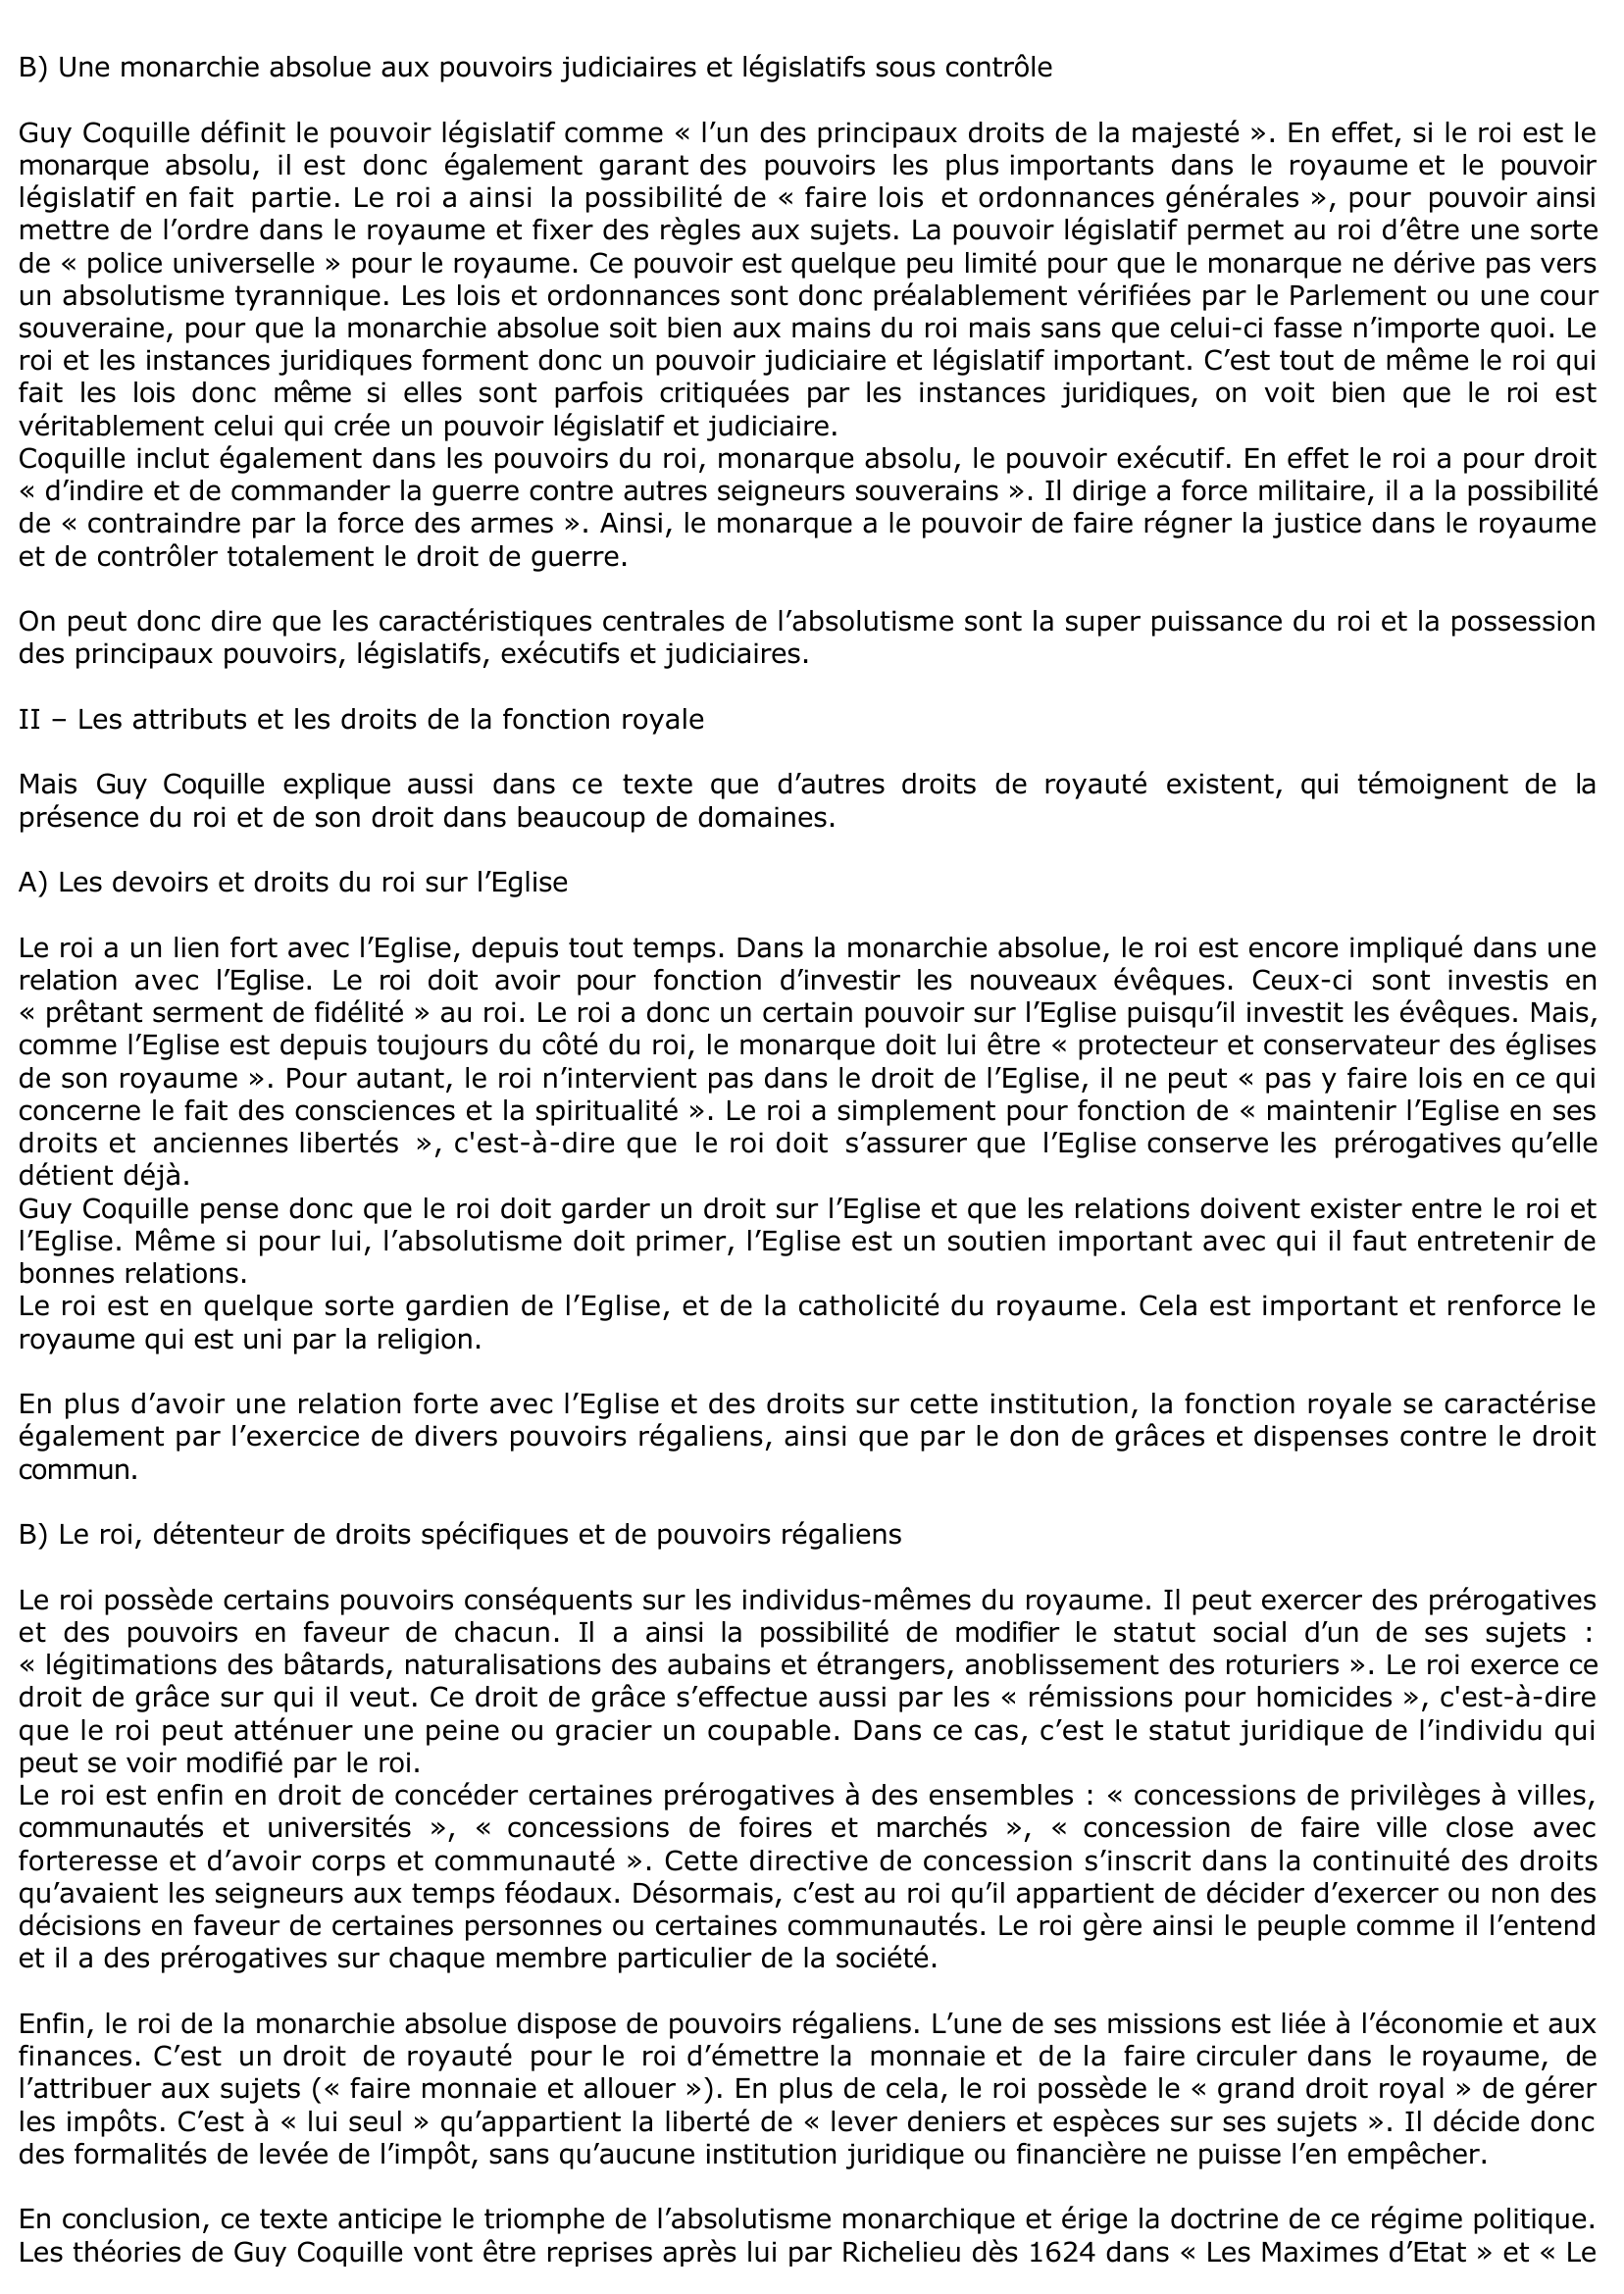 Prévisualisation du document « Du droict des François », extrait de l’œuvre « Institution au droit des François ». Guy Coquille